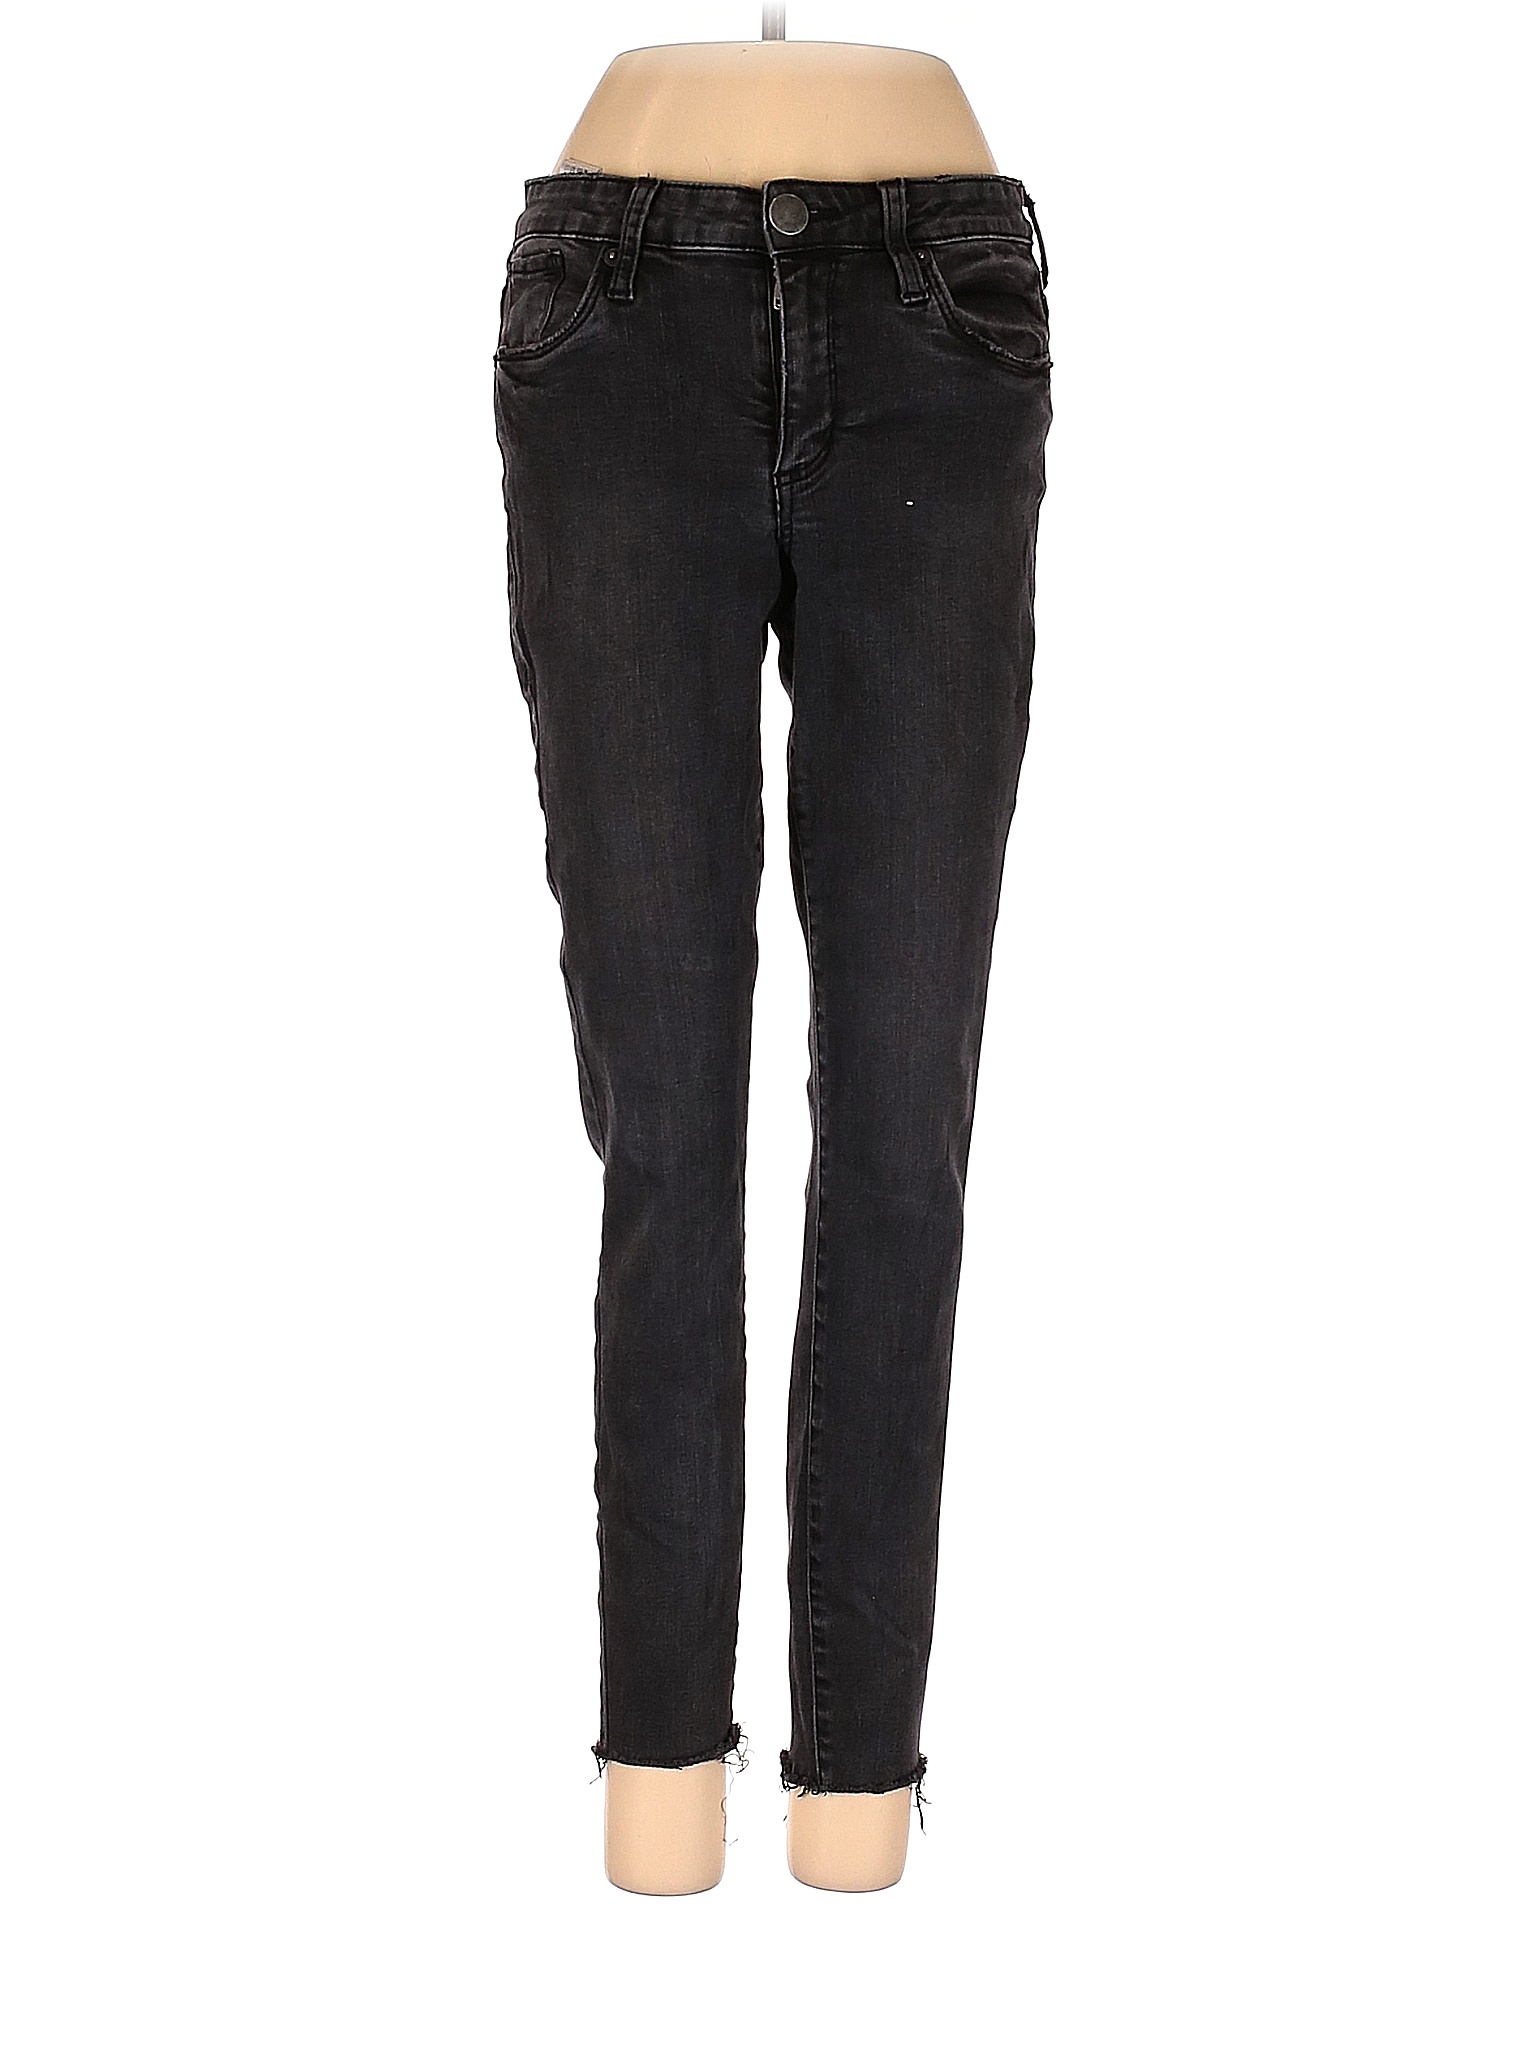 STS Blue Solid Black Jeans 25 Waist - 85% off | thredUP